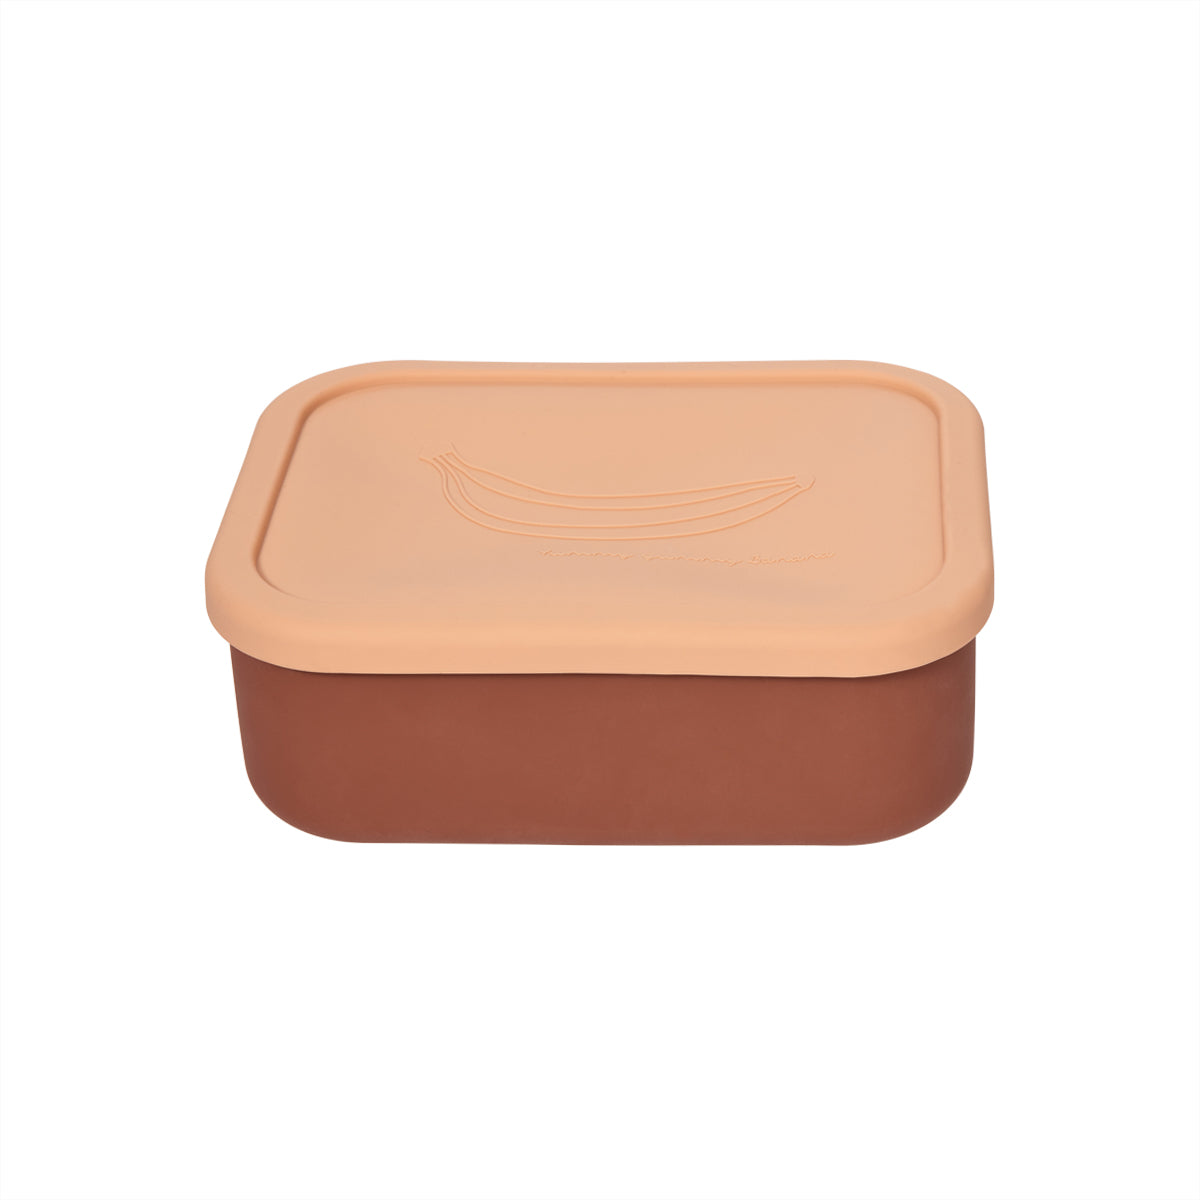 OYOY MINI Yummy Lunch Box - Large Lunch Box 404 Powder / Sienna